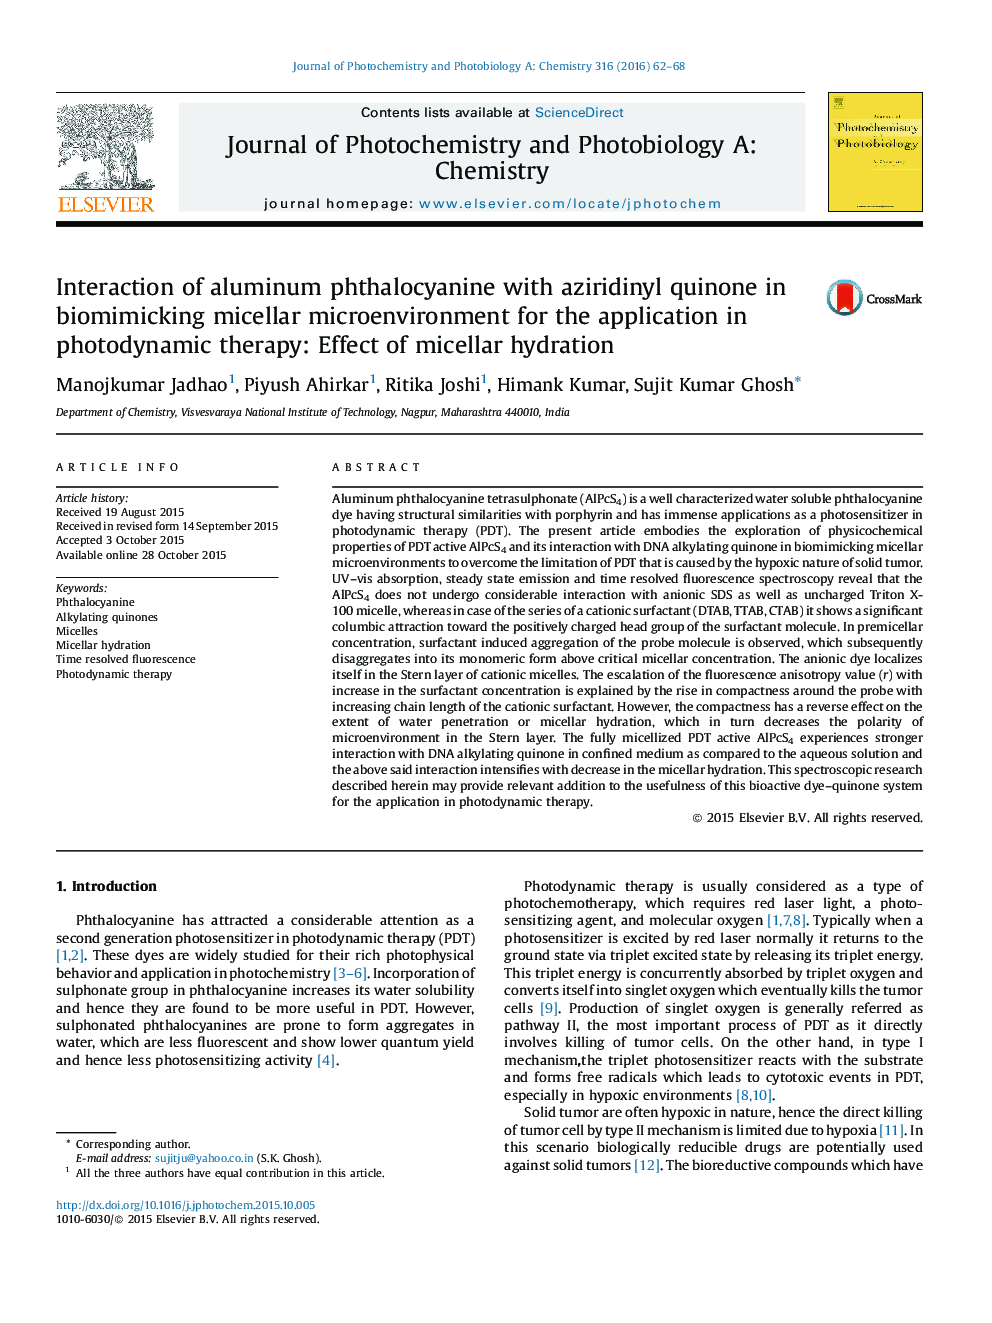 تعامل فتالوسیانین آلومینیوم با آزیریدینیلینون در بیومیزیک میکروسکوپ میکلایل برای کاربرد در درمان فوتودینامیک: اثر هیدراتاسیون میسلر 